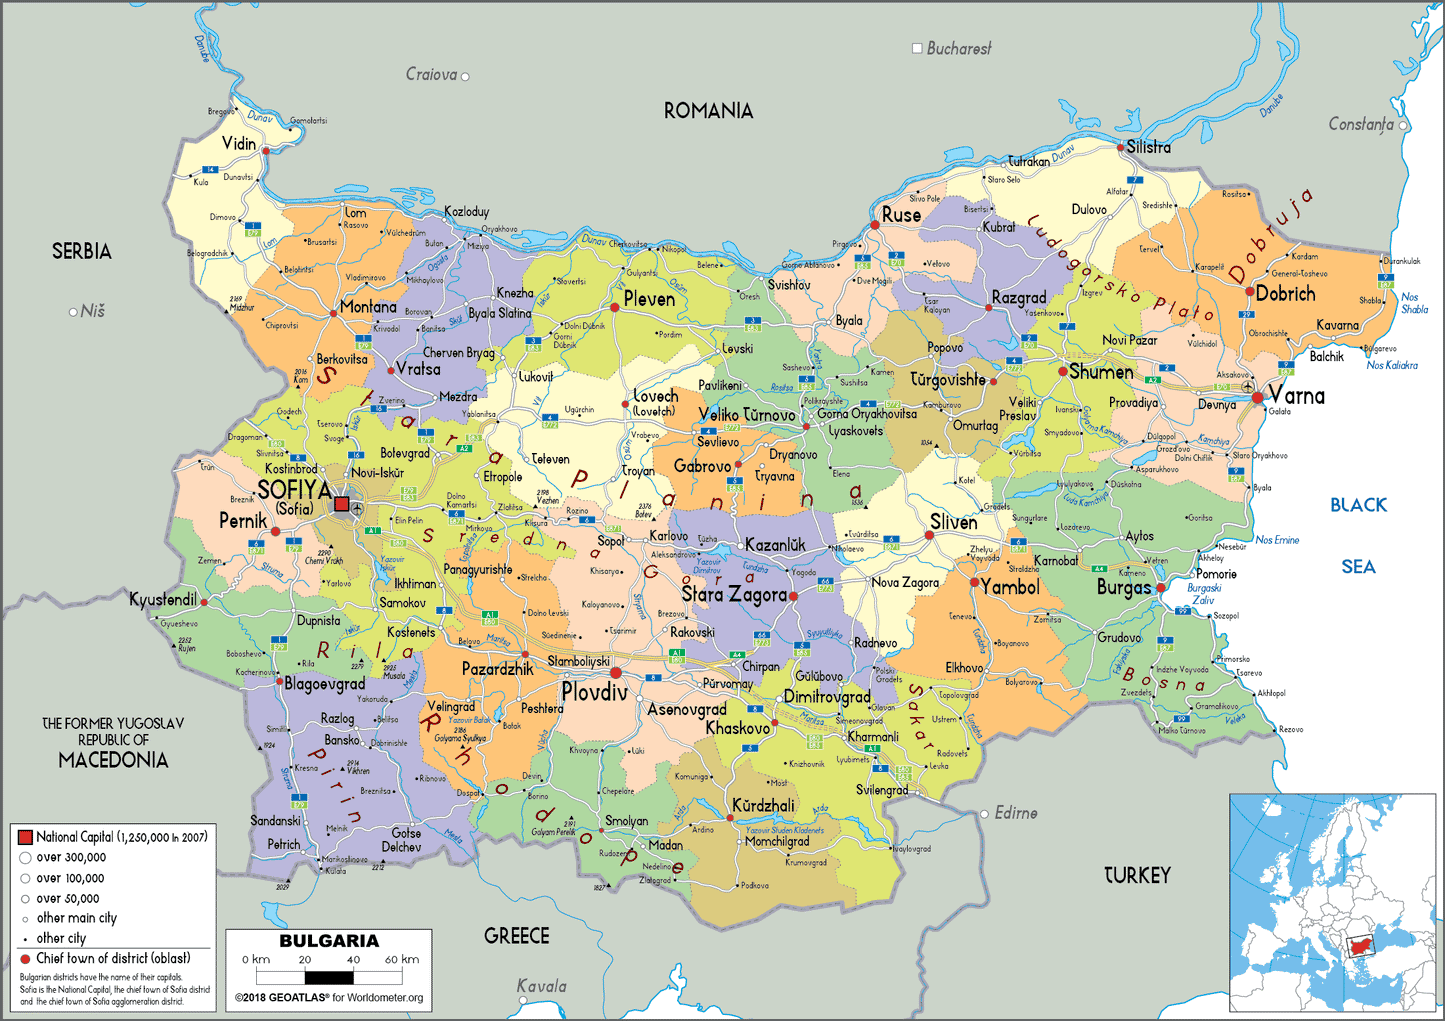 Overzicht regio's in Bulgarije